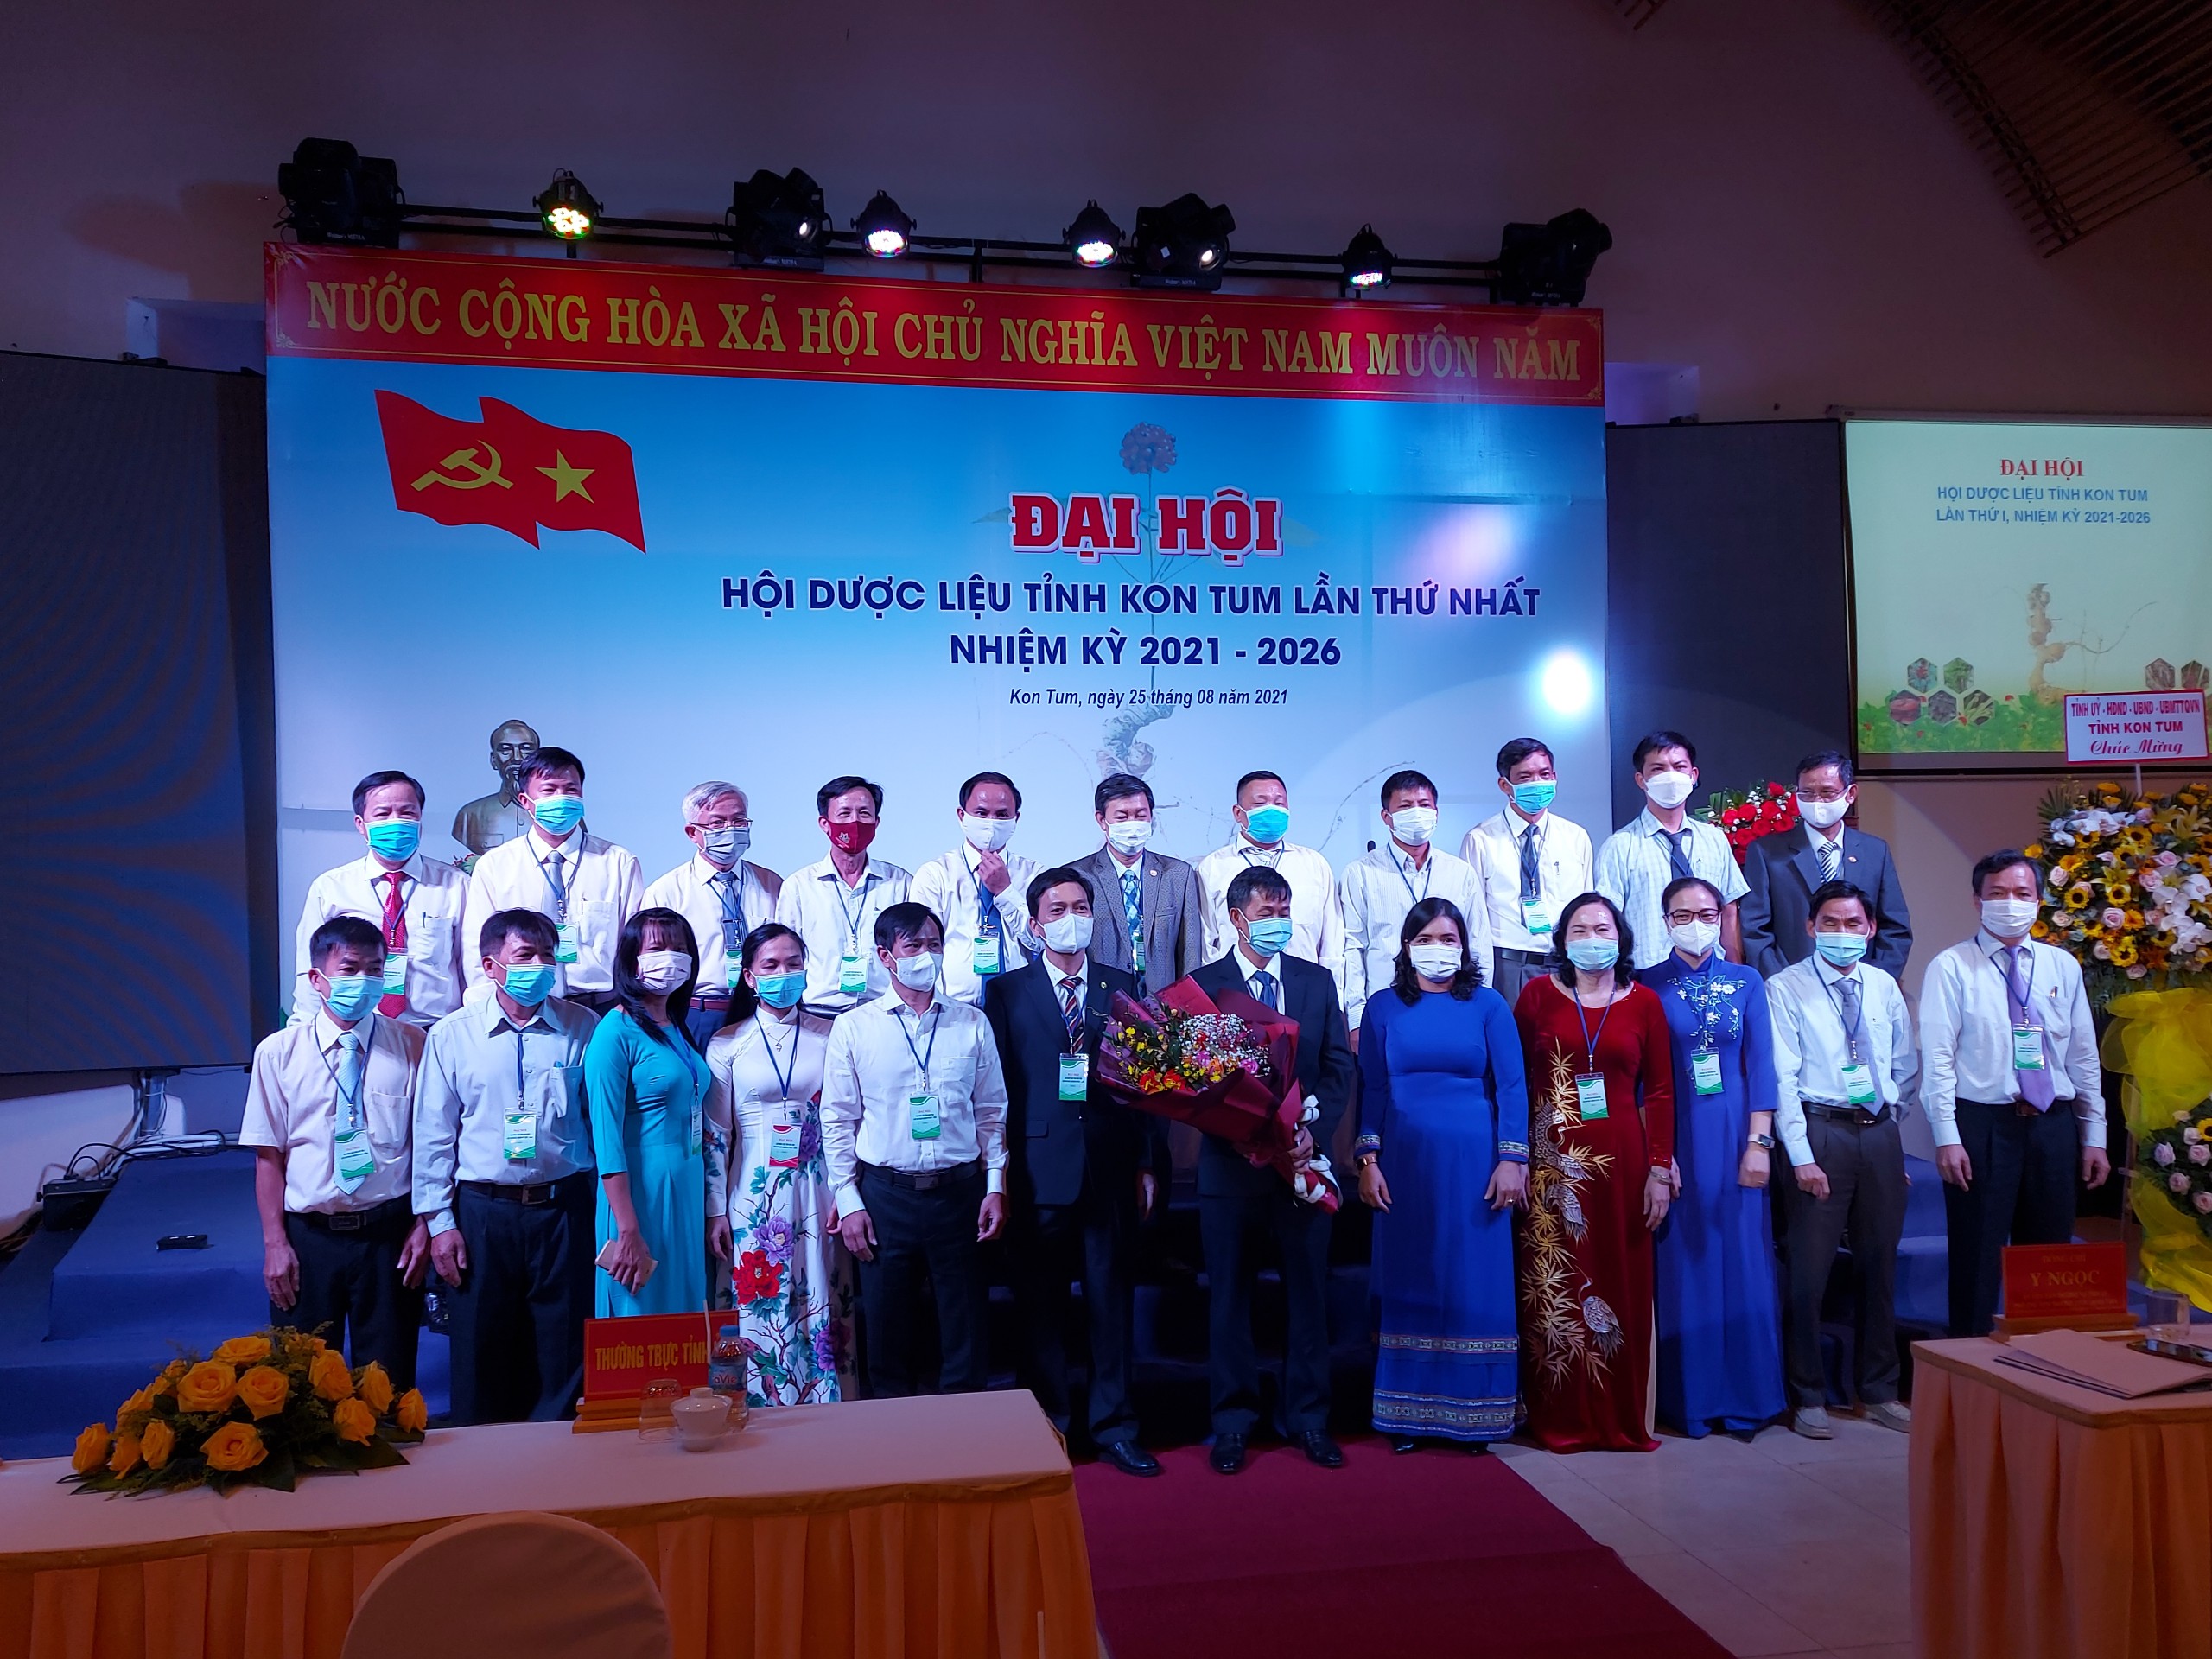 Đại hội Hội Dược liệu tỉnh Kon Tum lần thứ nhất, nhiệm kỳ 2021-2026